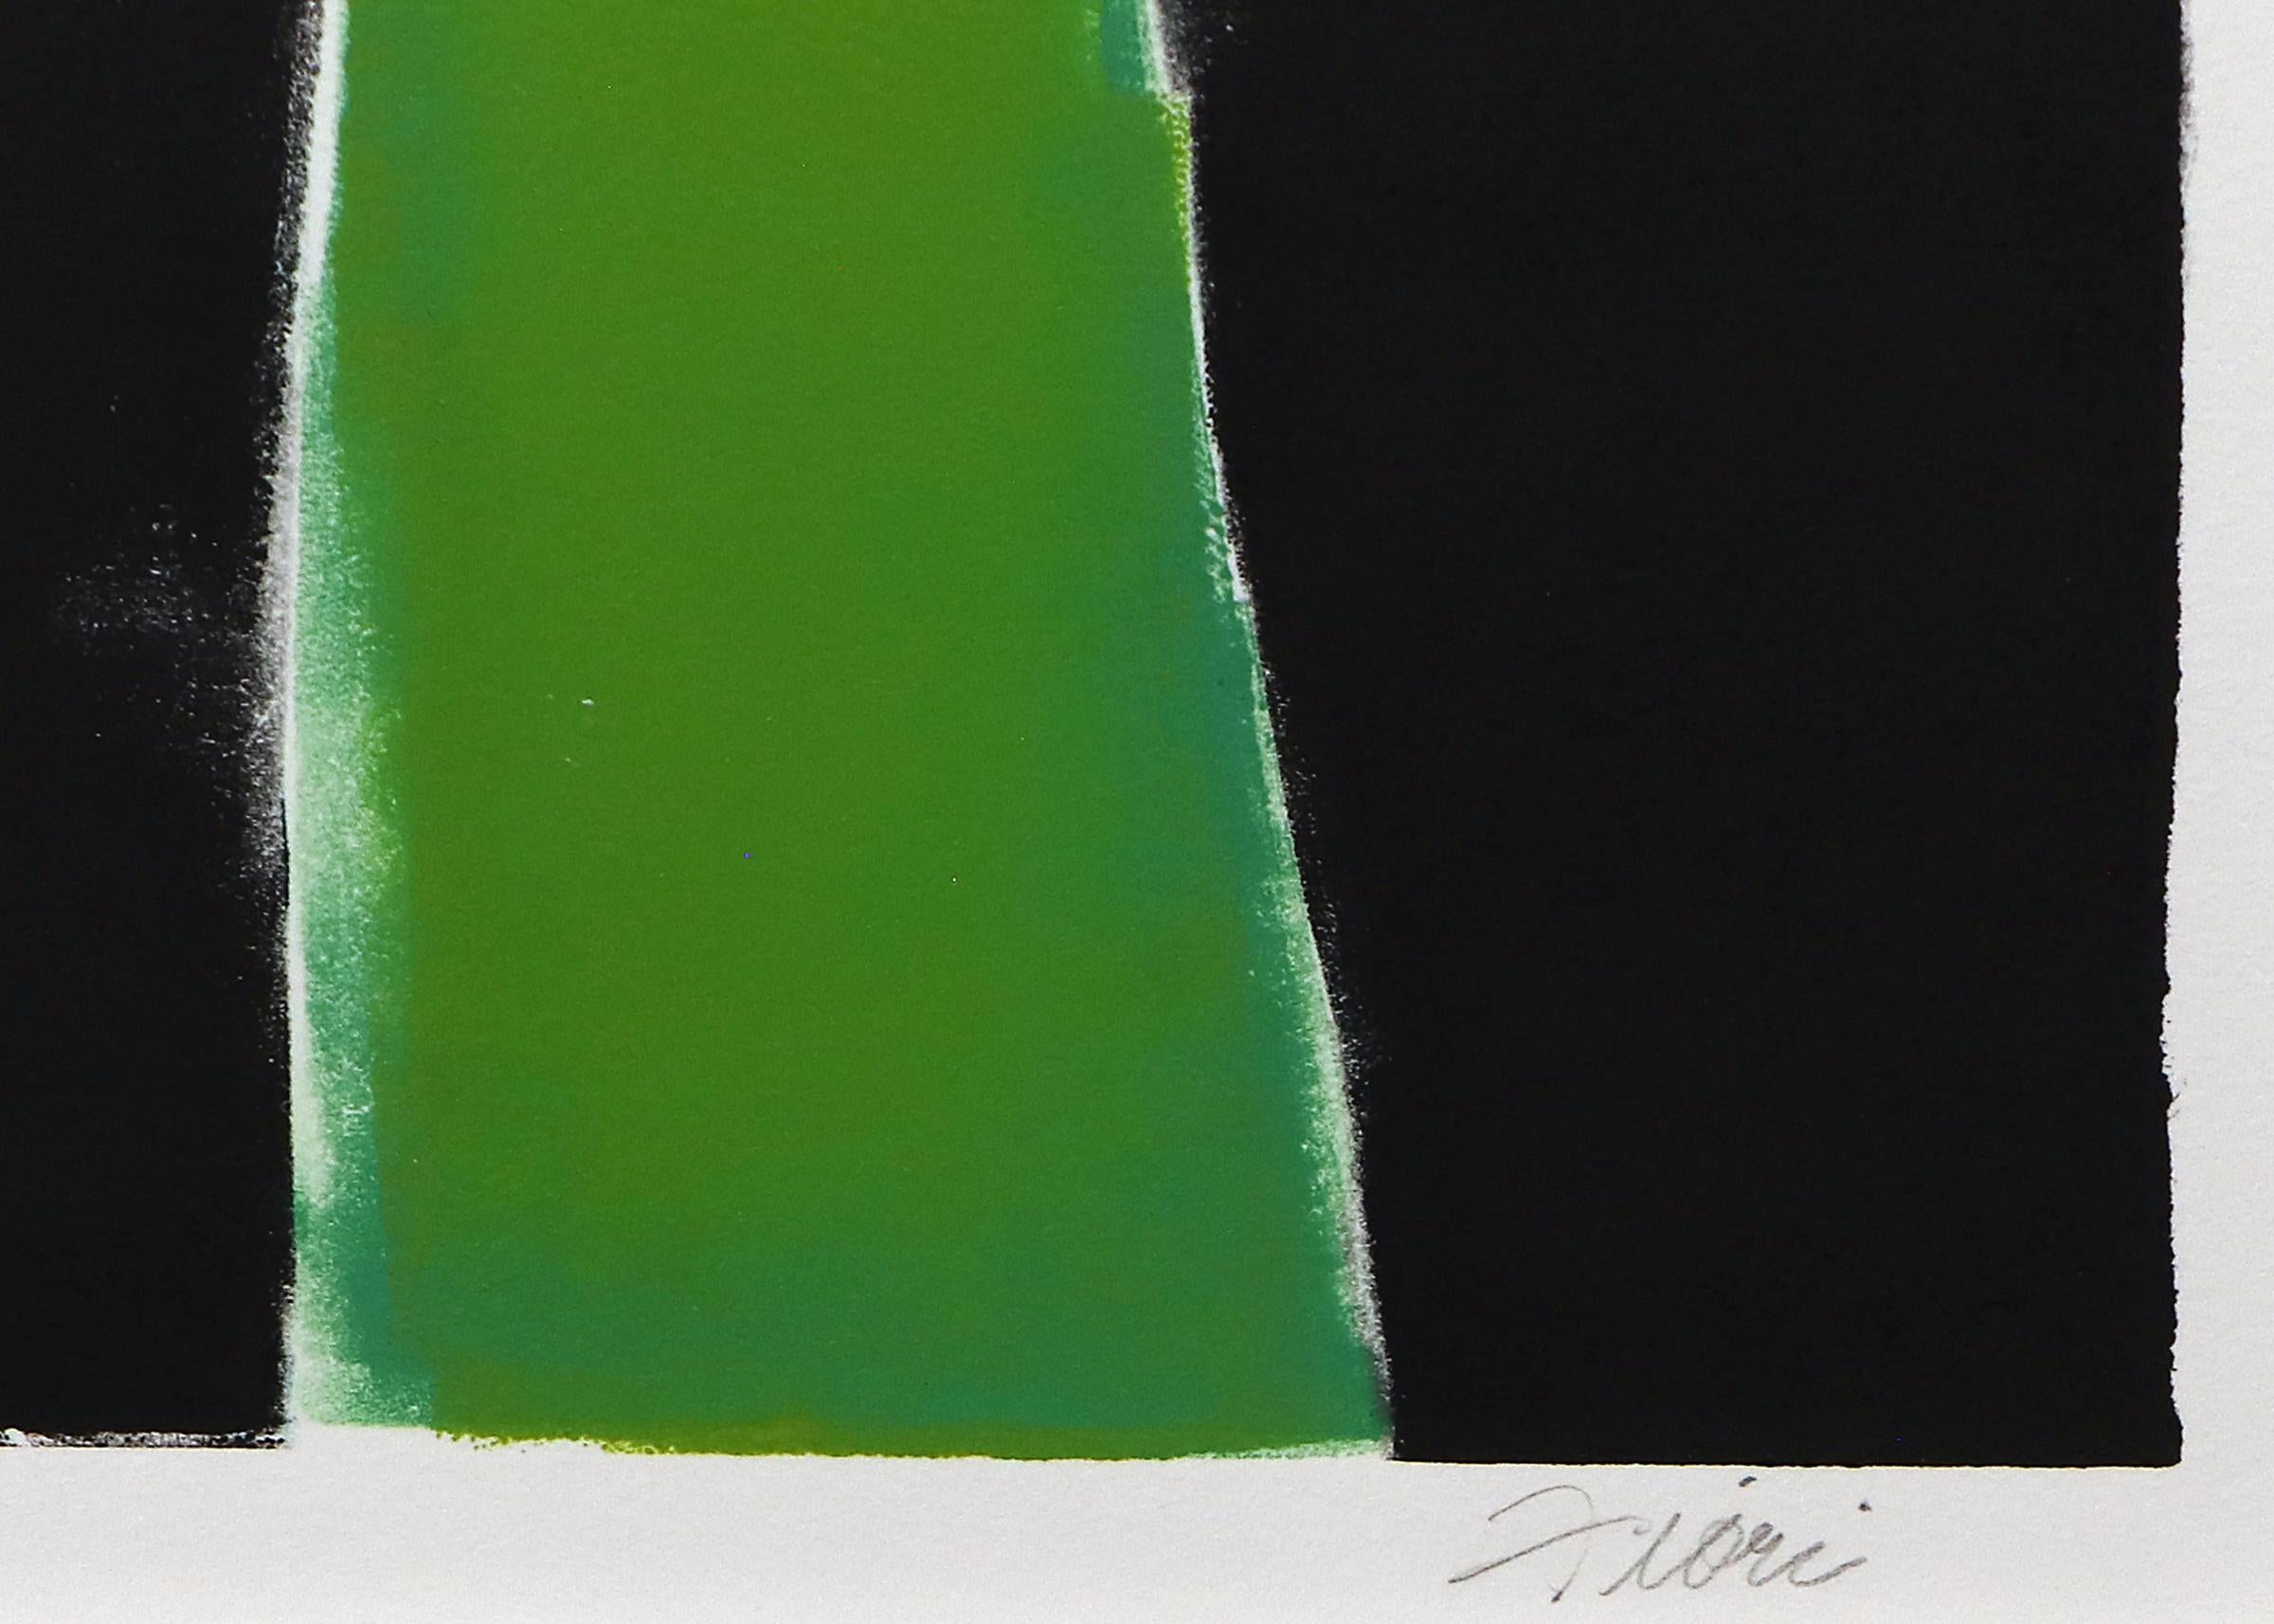 Abstrakte Monotypie der Künstlerin Wilma Fiori (1929-2019) aus Colorado.  Abstrakte Komposition in tiefen Juwelentönen von Grün, Orange, Türkis und Lila auf schwarzem Hintergrund.  Monotypie (nummeriert 1/1), gedruckt auf Papier, signiert vom